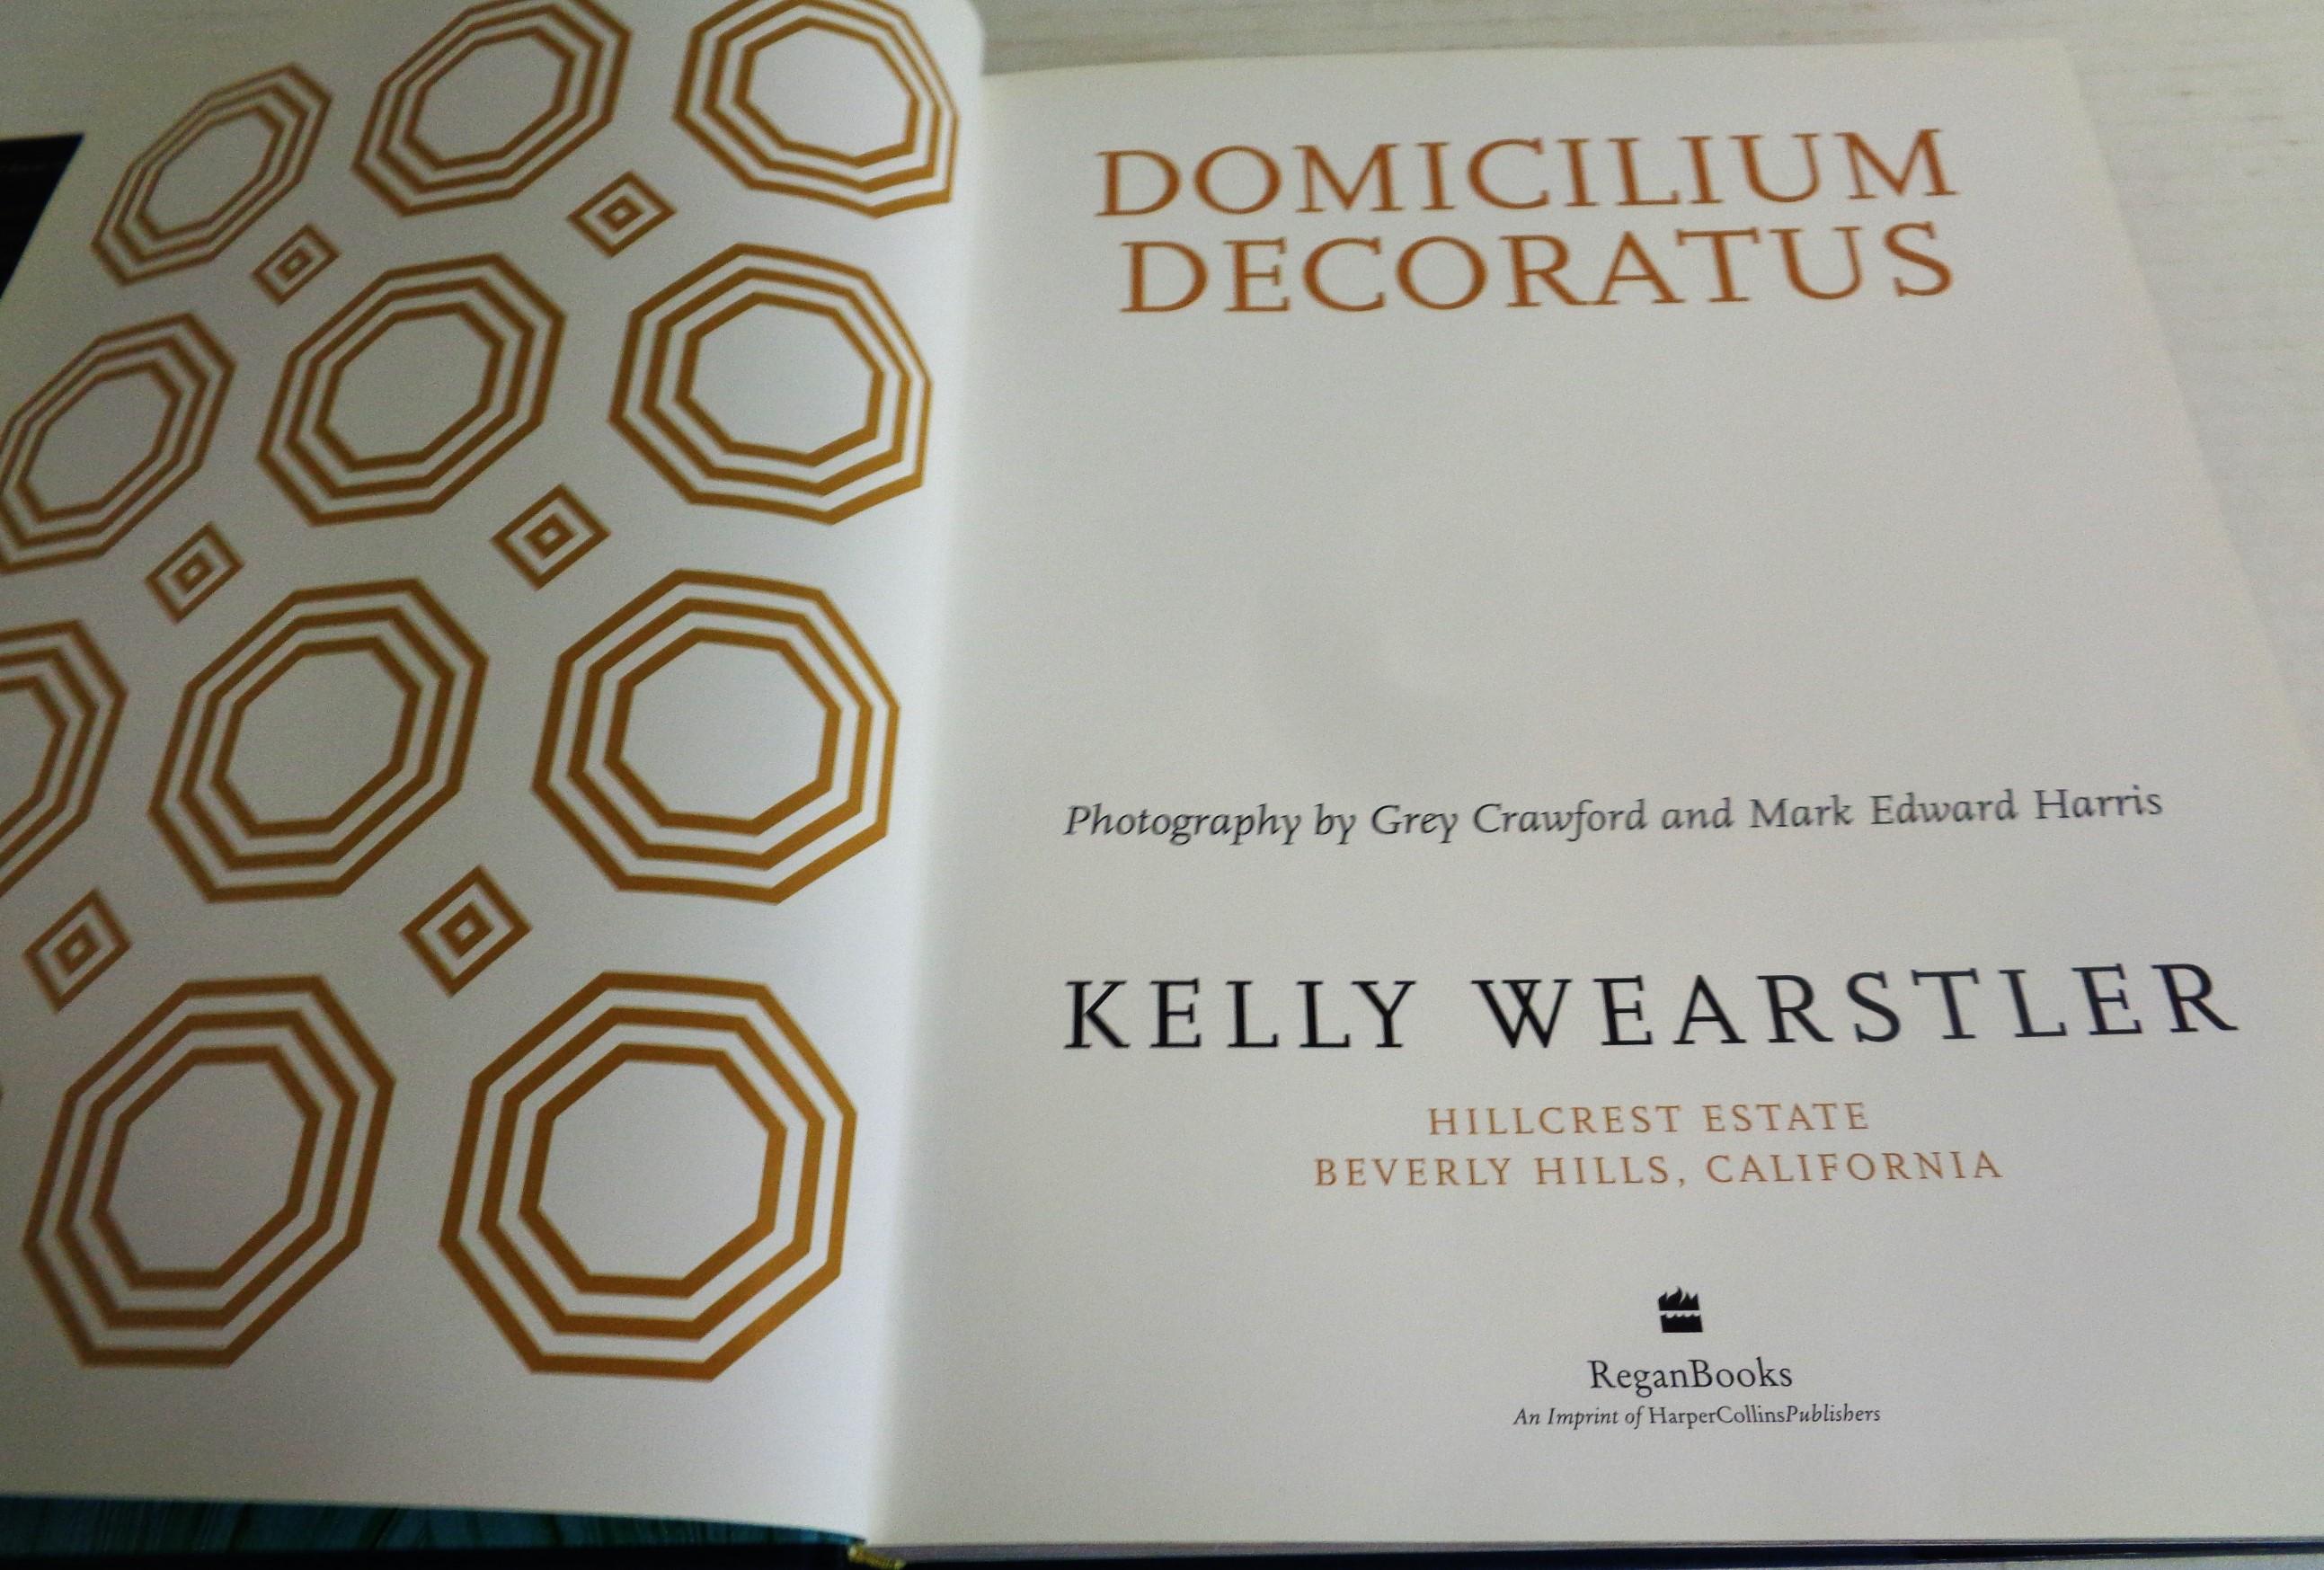 Contemporary Domicilium Decoratus: Kelly Wearstler, 2006 Regan Books Harper Collins - 1st Ed.